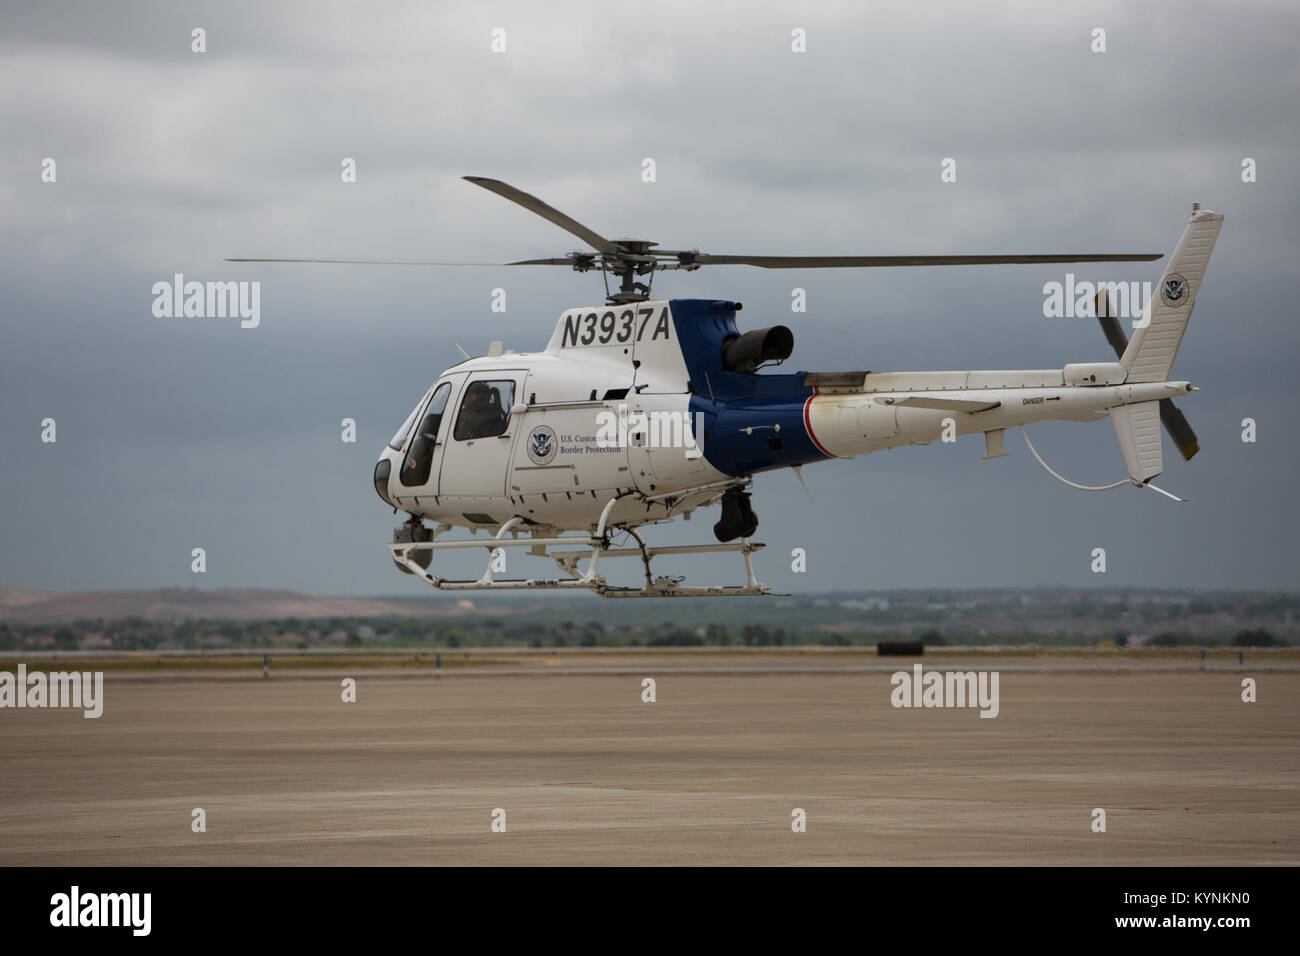 Einer US-amerikanischen Zoll- und Grenzschutzbehörden, Luft und Marine Operations pilot-aus Laredo, Texas zieht aus dem flug Linie in einem aerostar Hubschrauber Sicherheitsstreifen für den Tag zu führen. Fotograf: Donna Burton Stockfoto